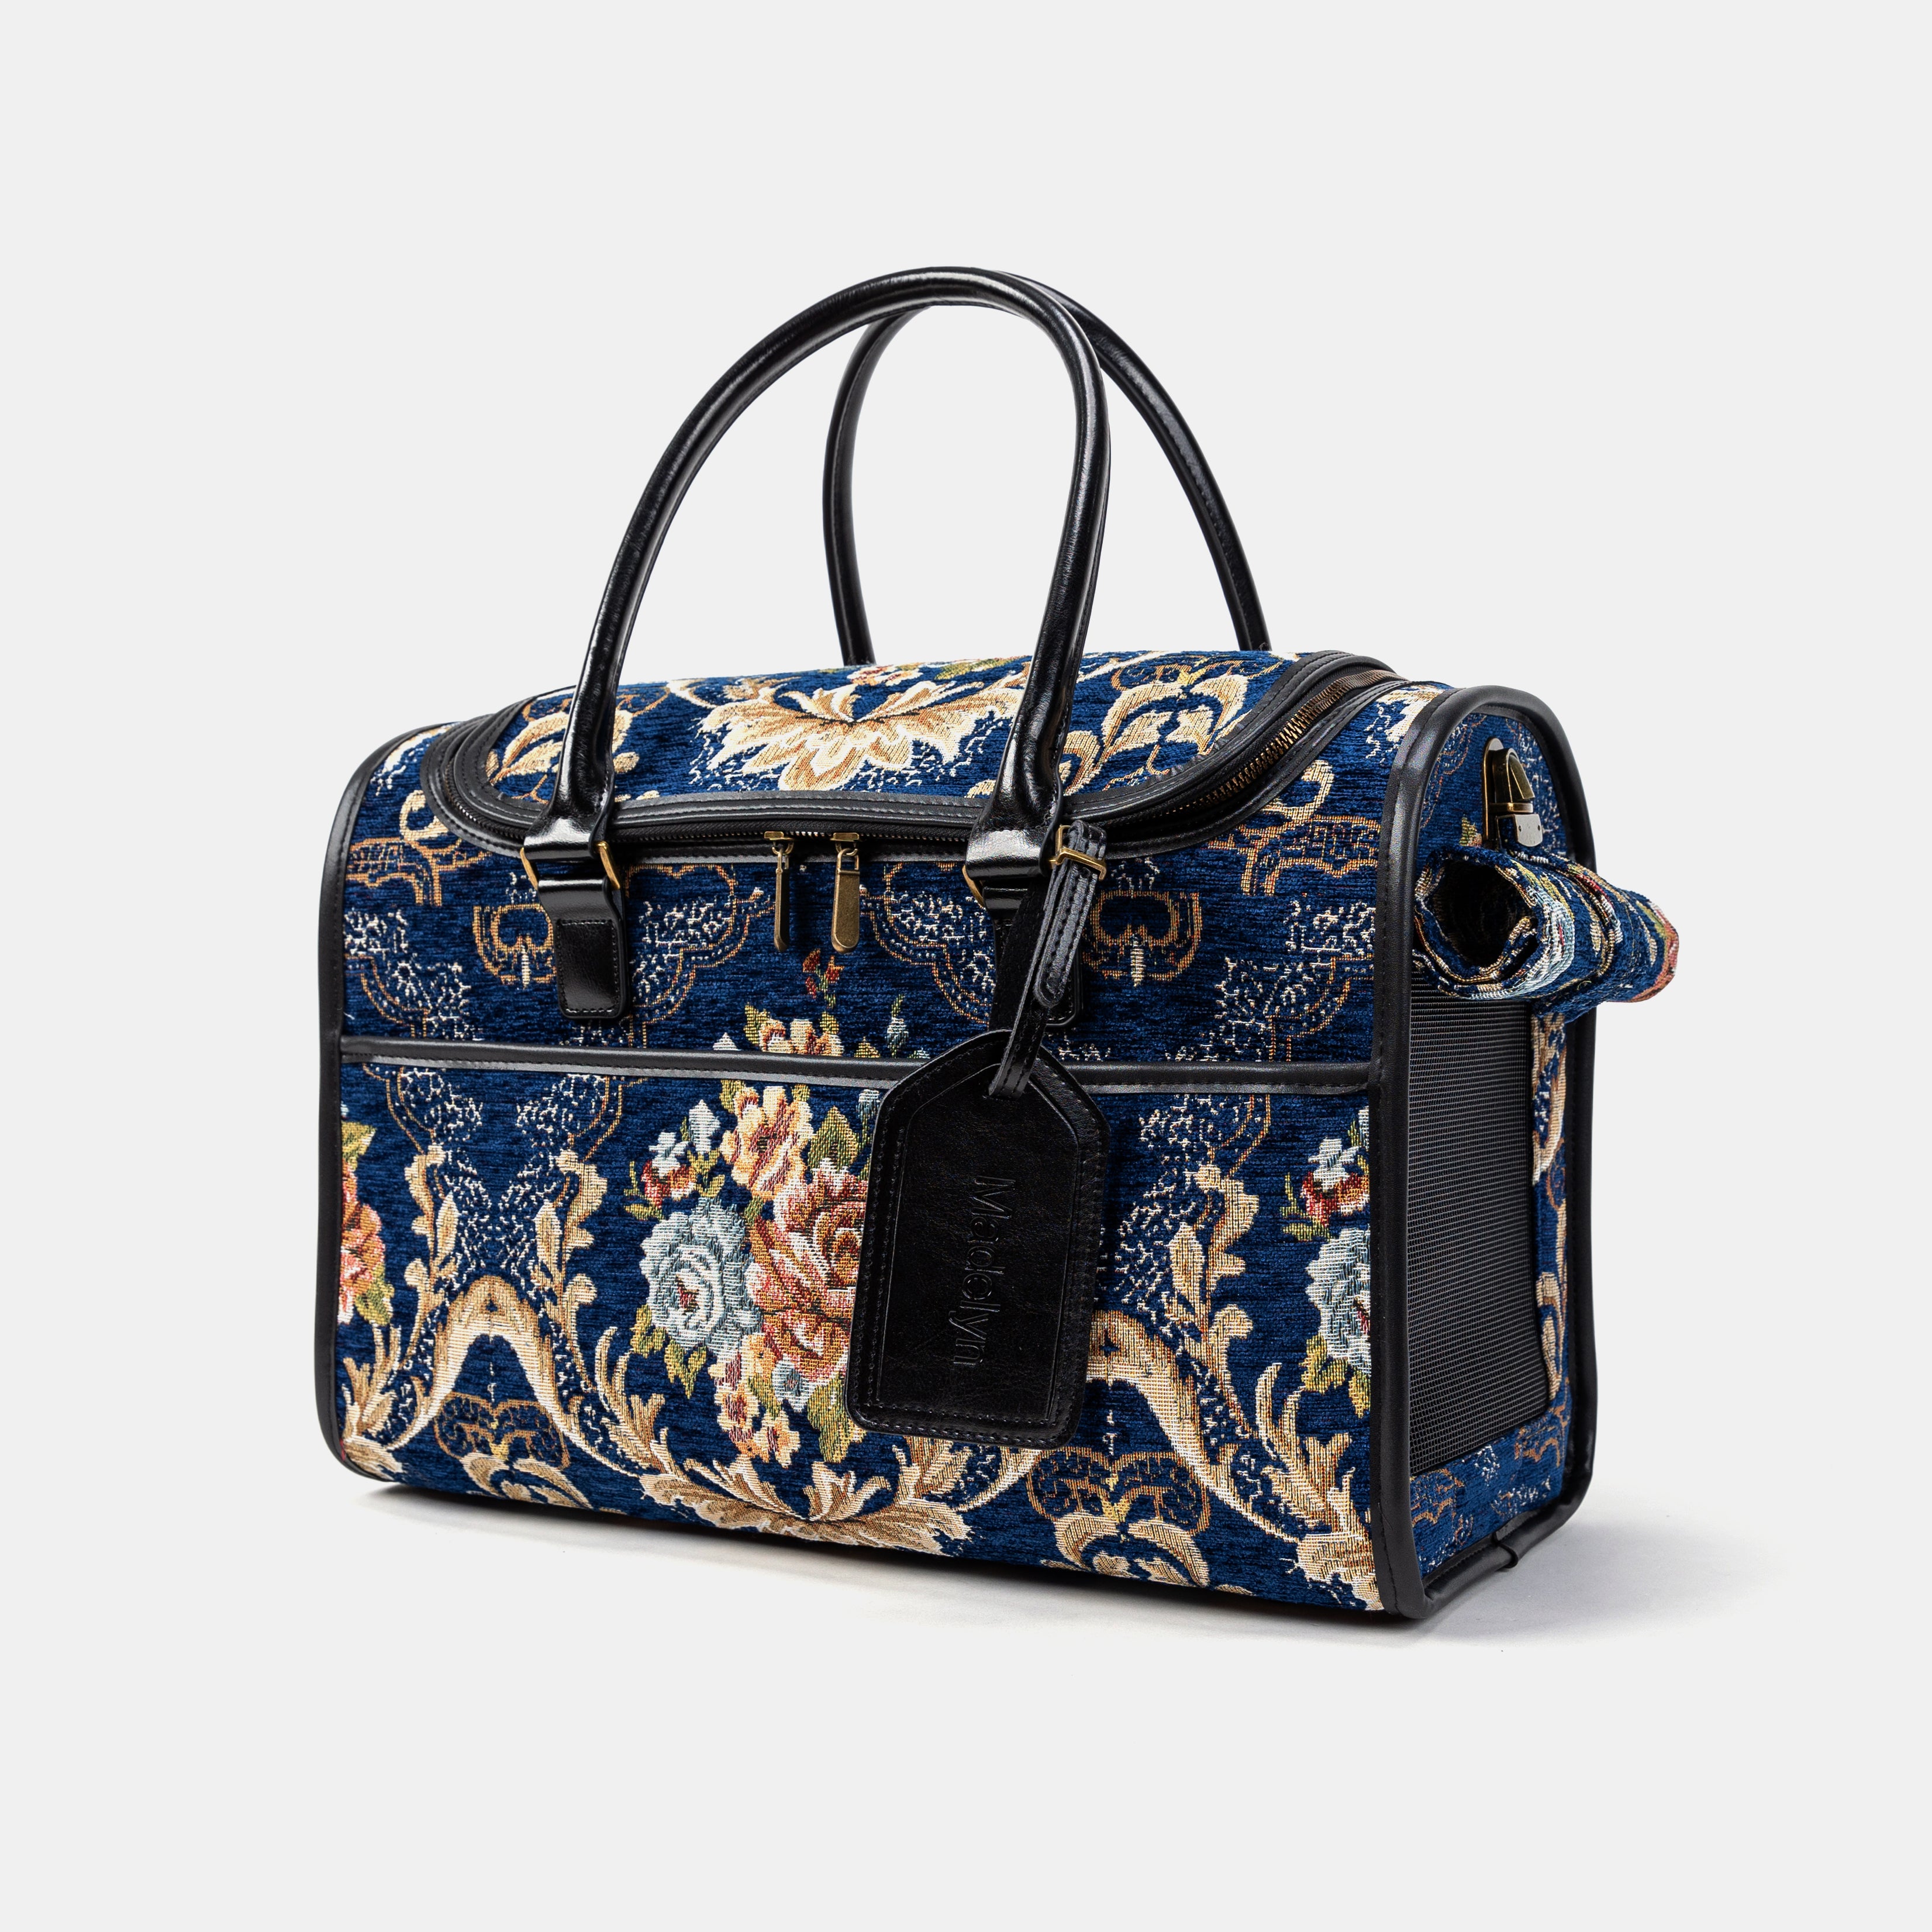 Travel Dog Carrier Bag Floral Blue Main